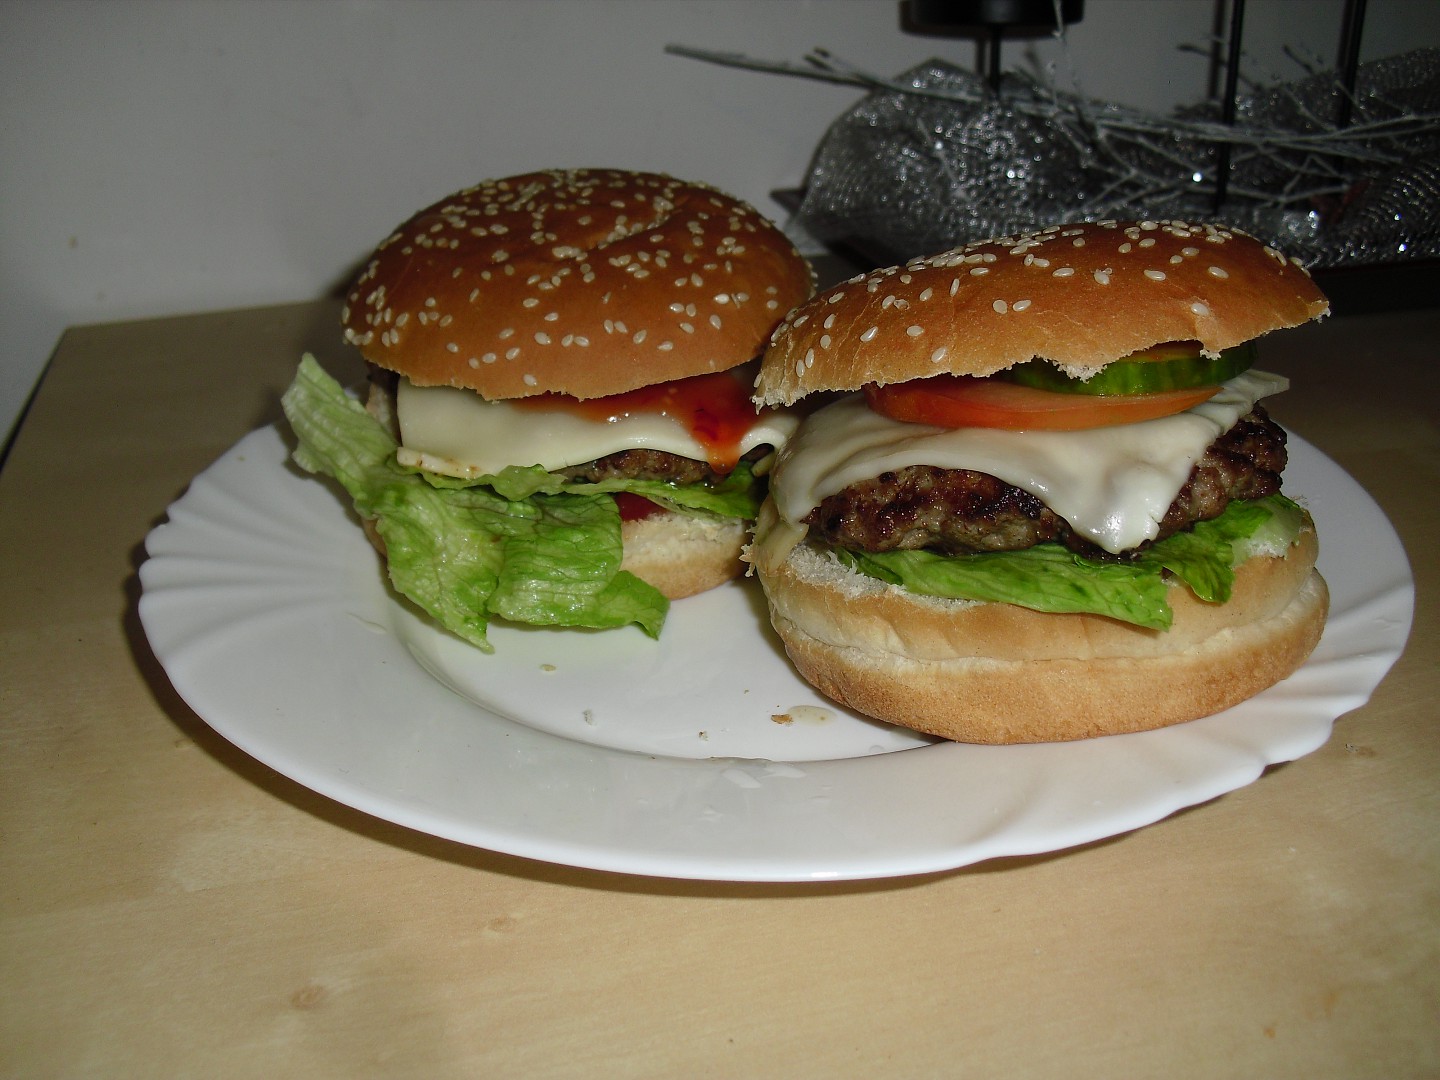 Domácí vepřové hamburgery